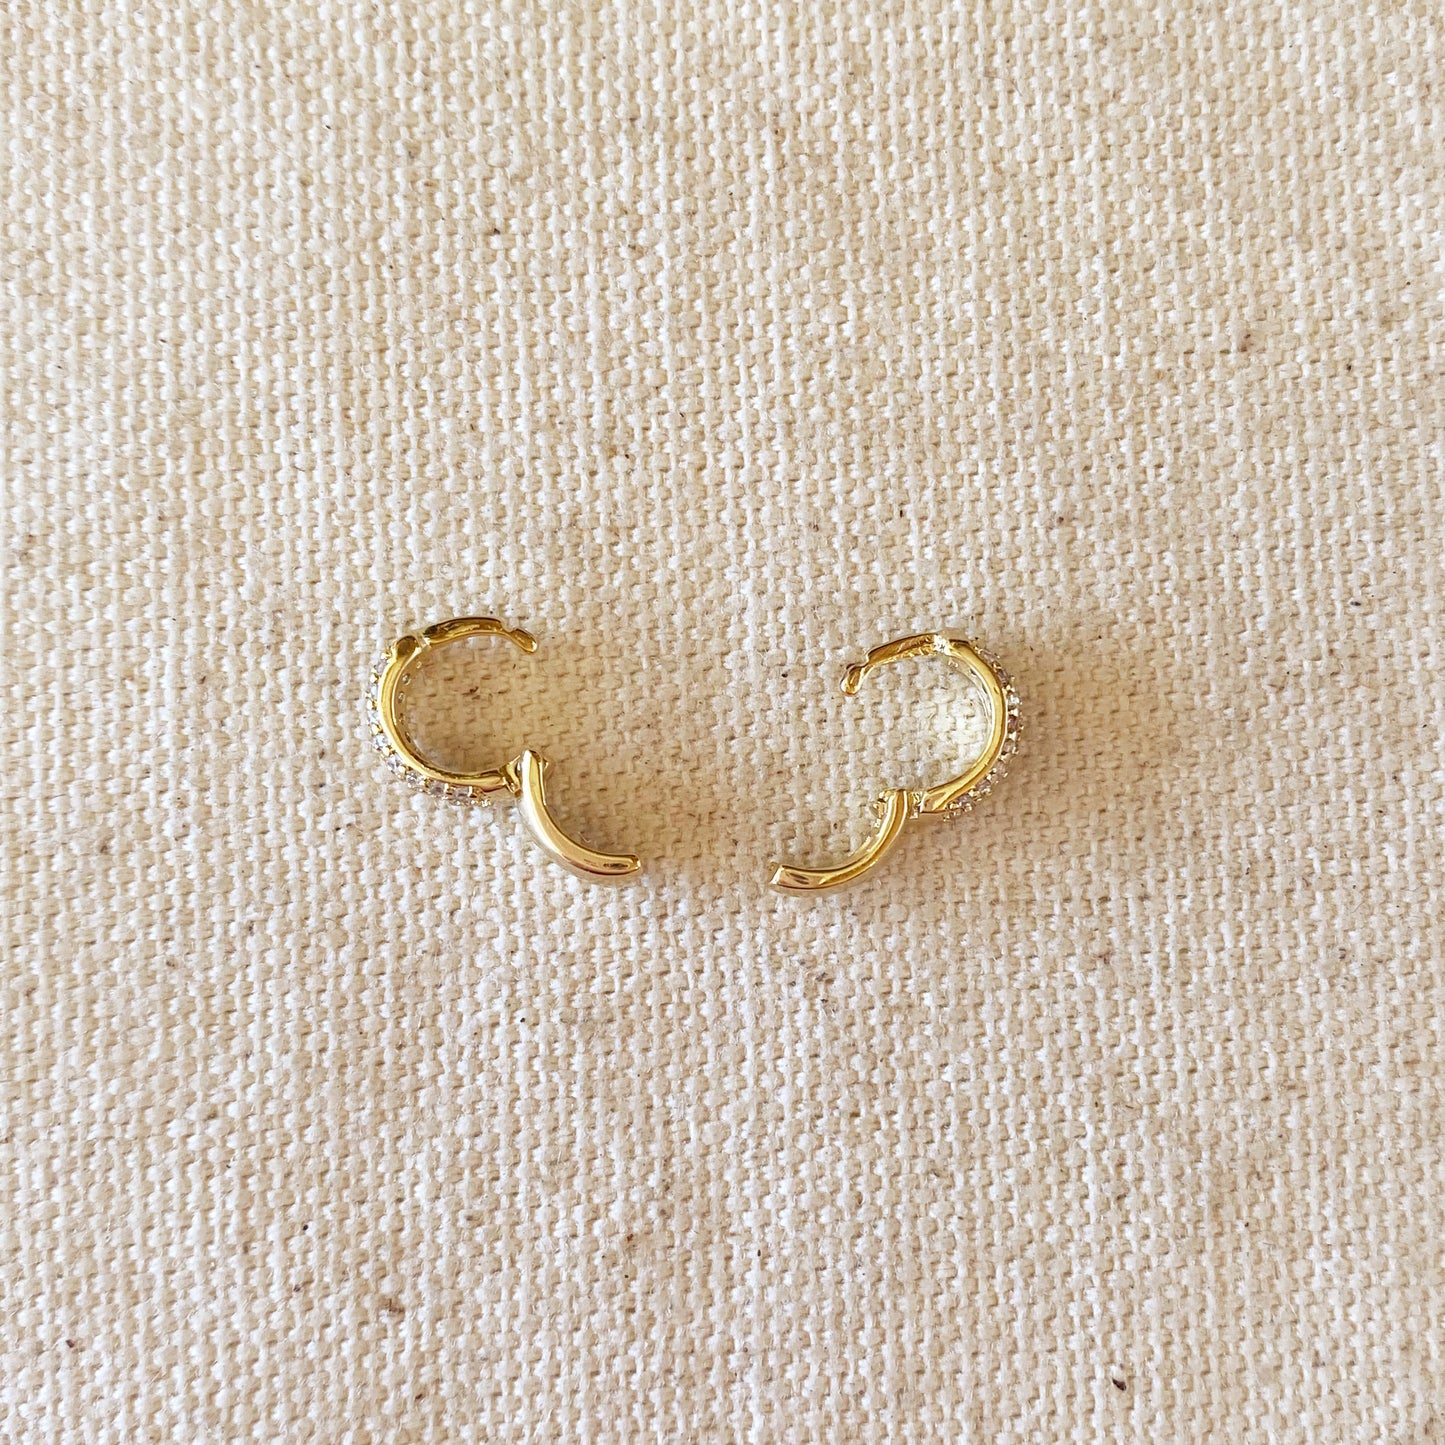 18k Gold Filled 9.5mm Cubic Zirconia Clicker Hoop Earrings